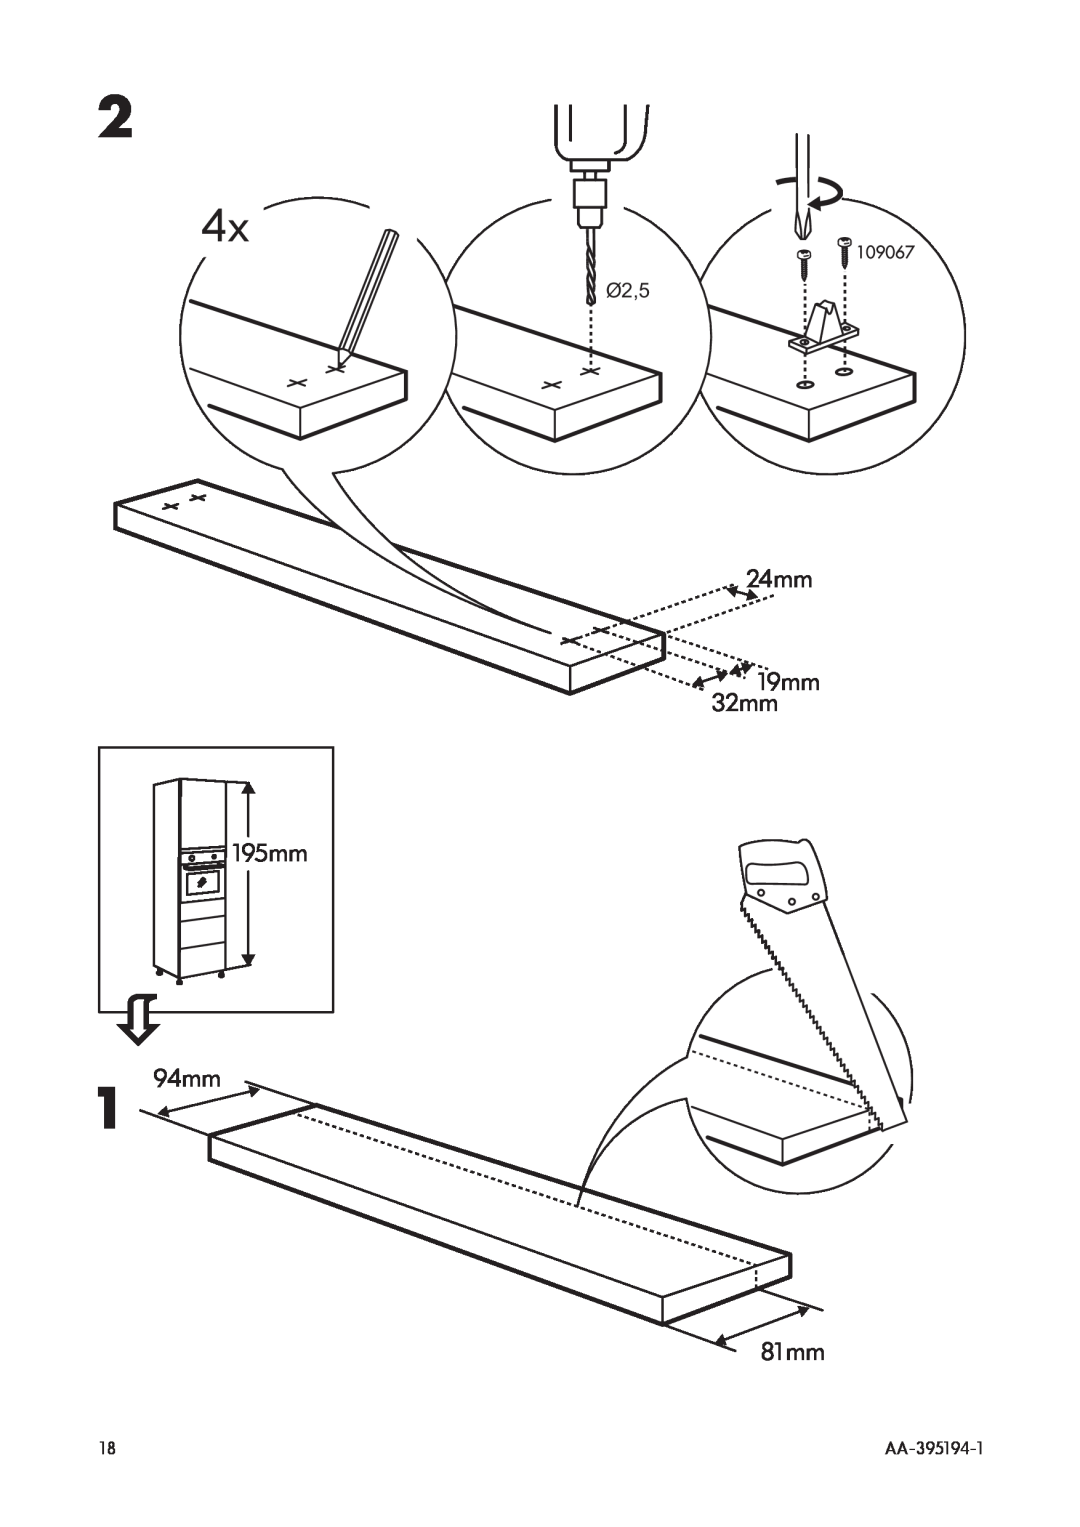 IKEA OV3 manual 24mm 19mm 32mm, 94mm, 81mm, Ø2,5, 195mm, AA-395194-1 